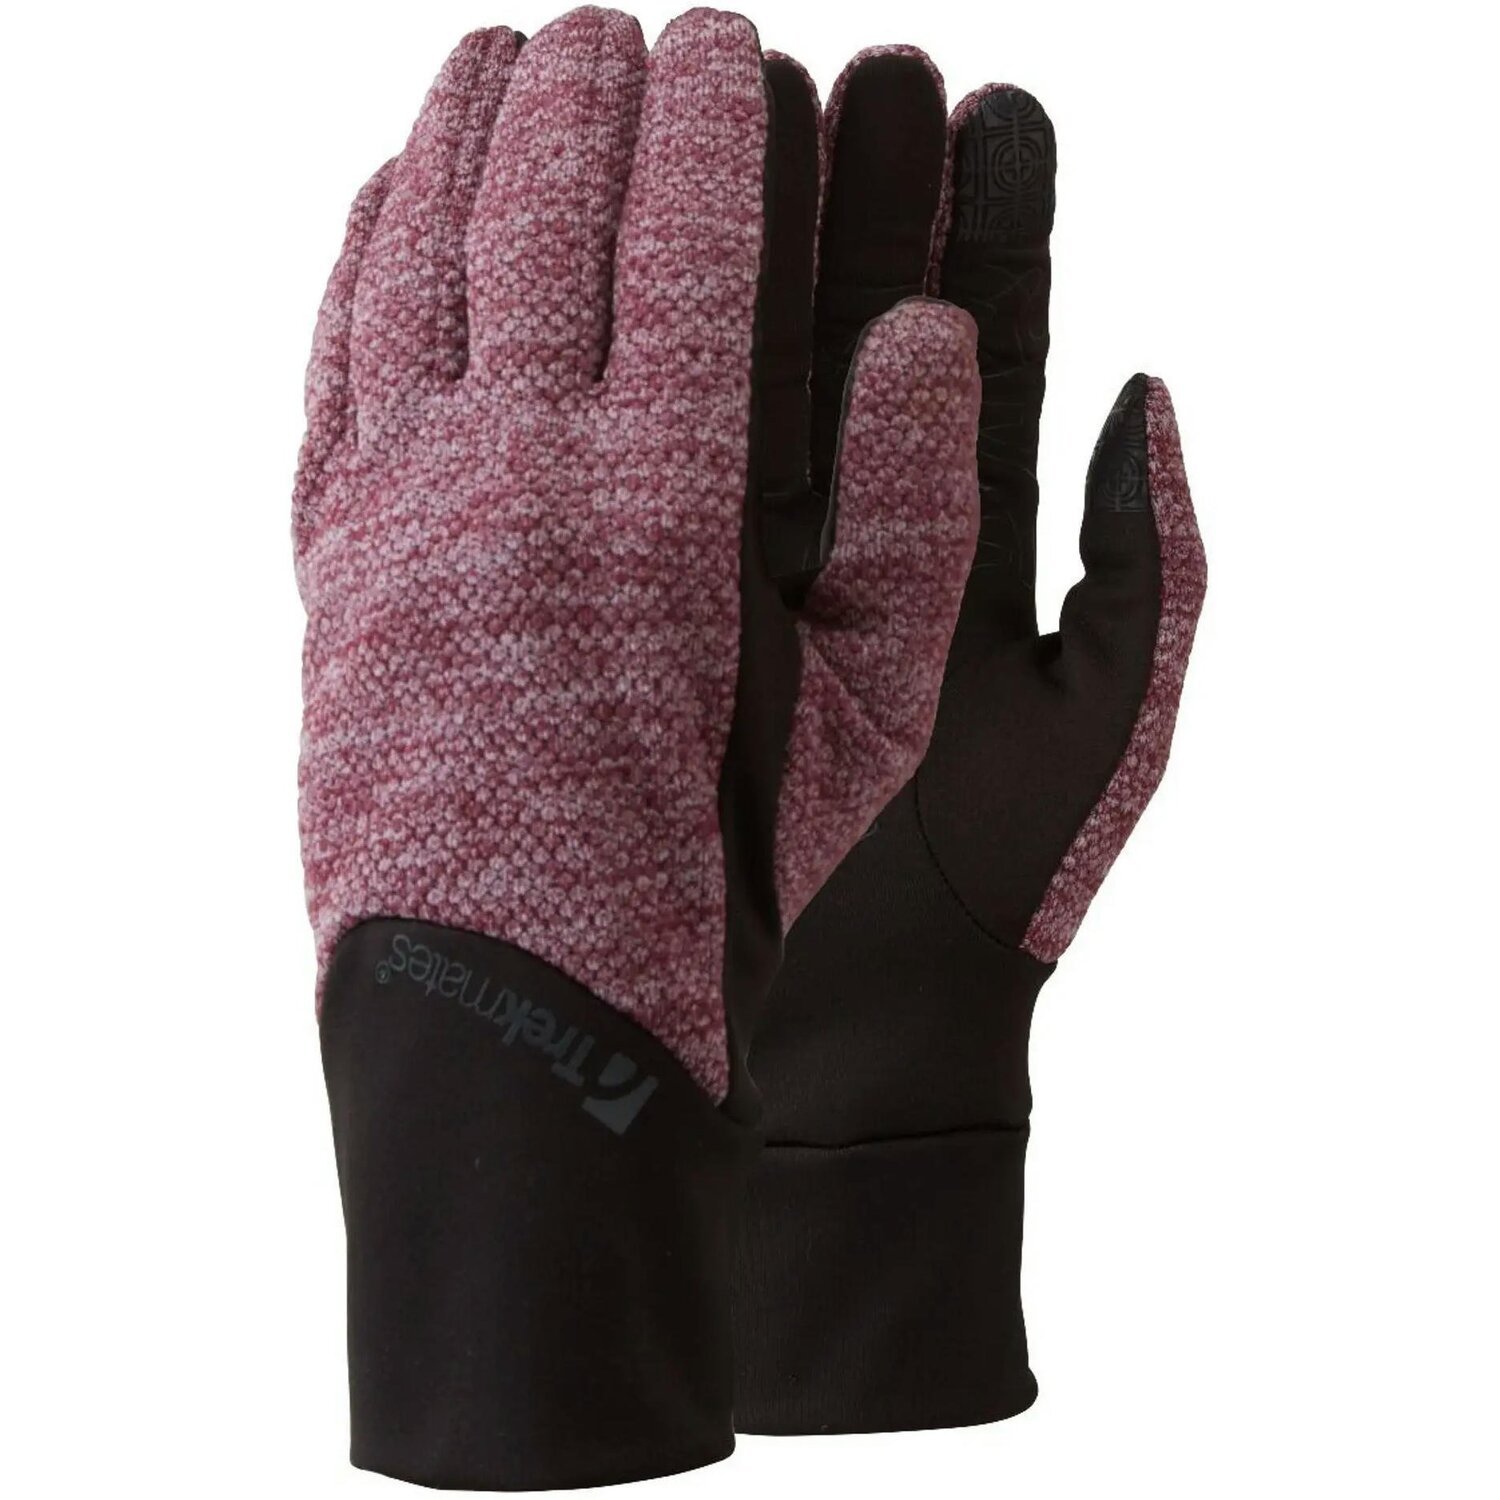 Перчатки Trekmates Harland Glove TM-006305 aubergine - S - фиолетовый/черный фото 